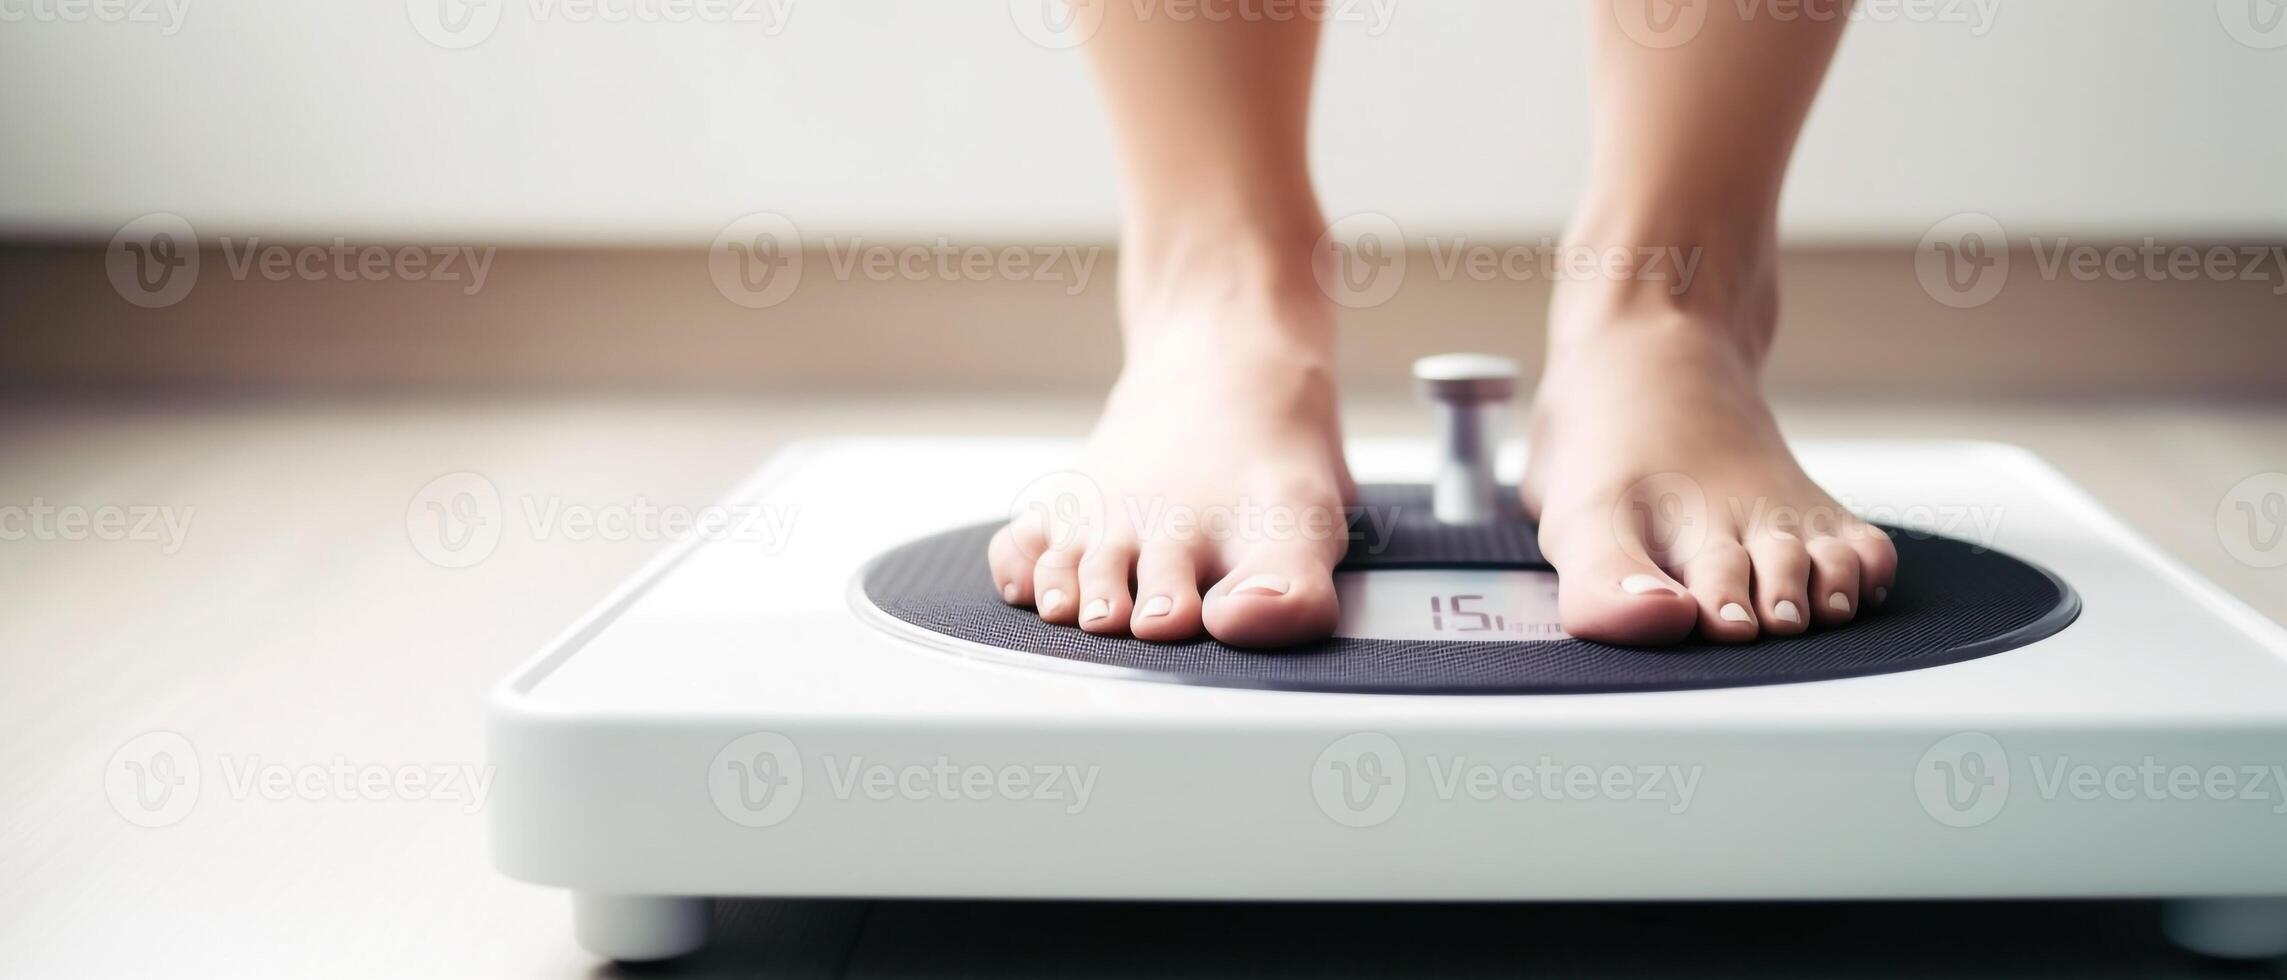 femmes pieds sur le poids Balance photo